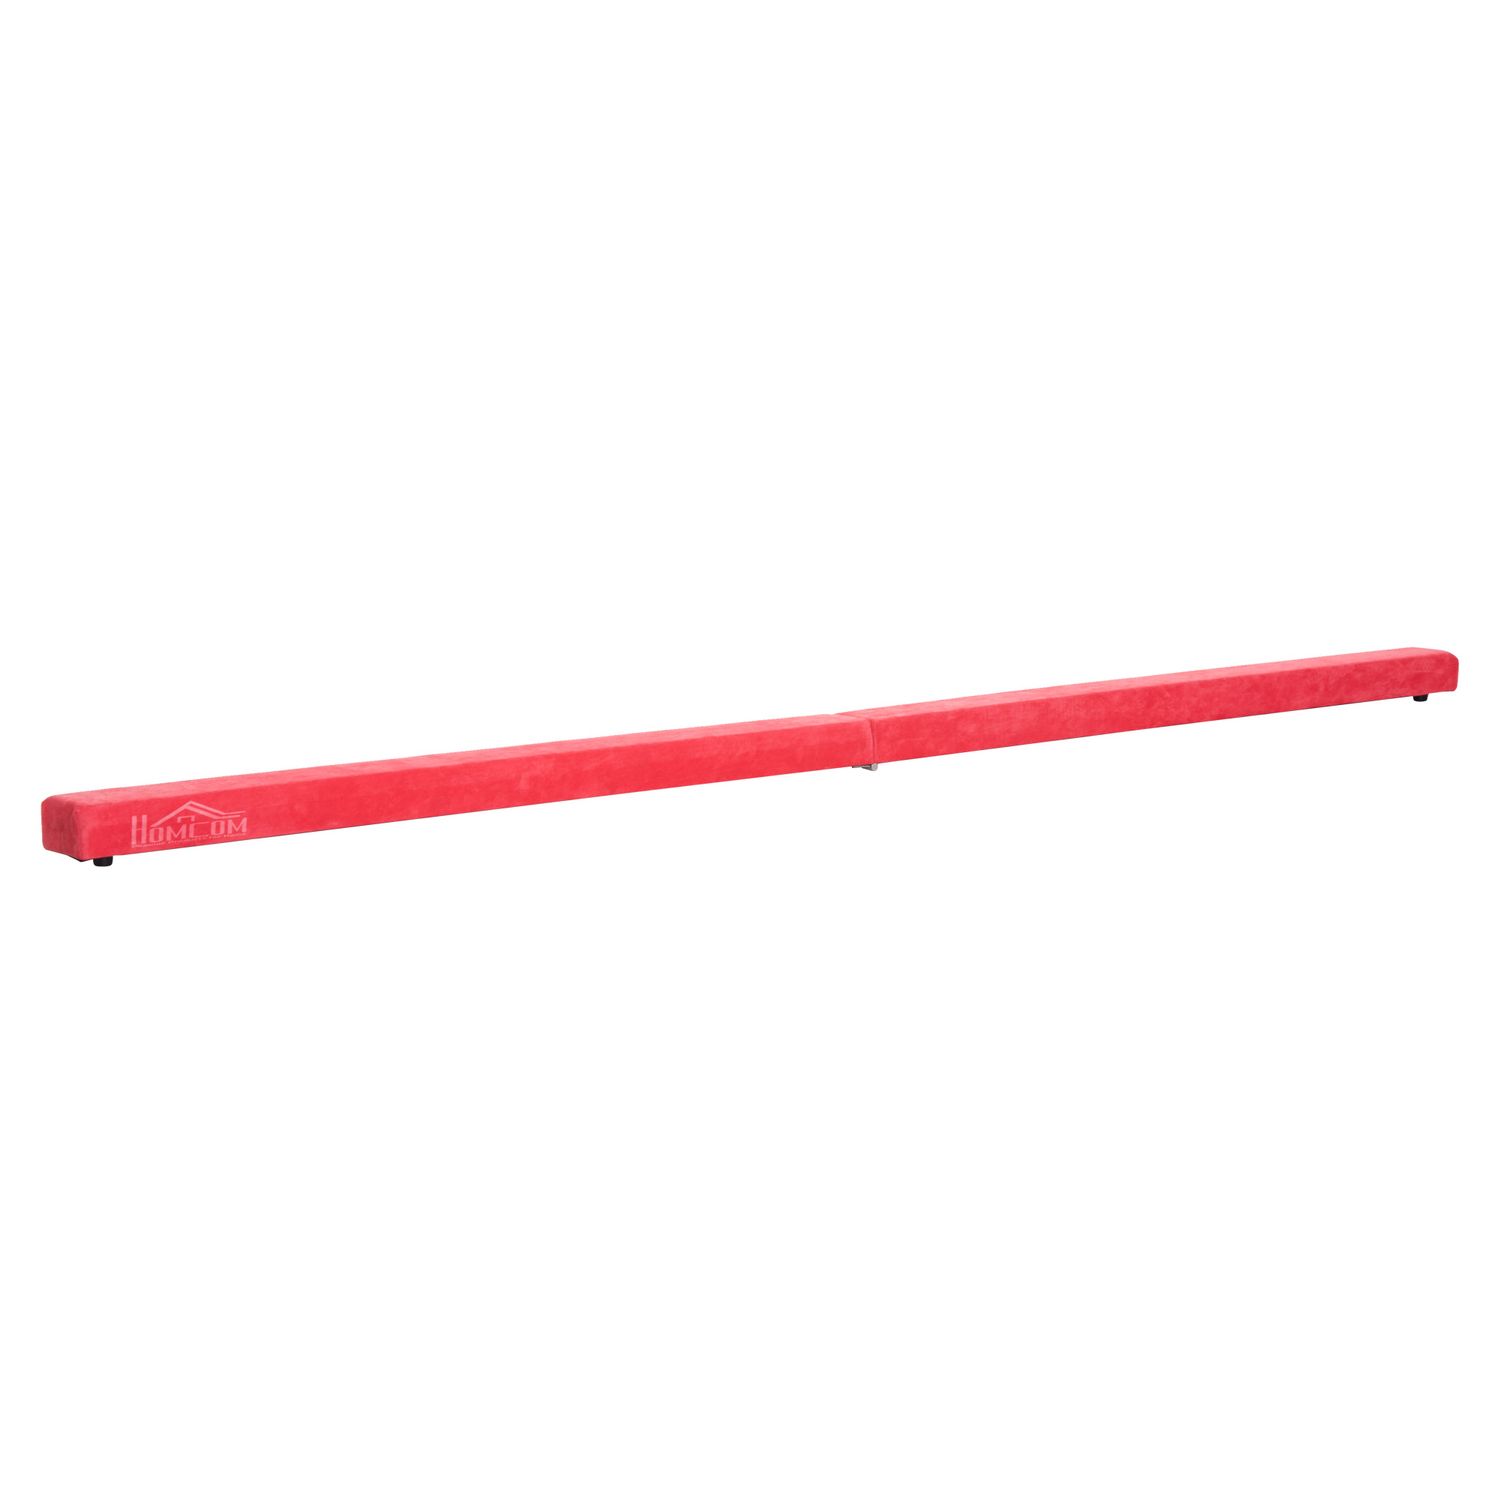 HOMCOM Poutre de gymnastique pliable poutre d'équilibre antidérapante 2,1 m  revêtement daim rouge pas cher 